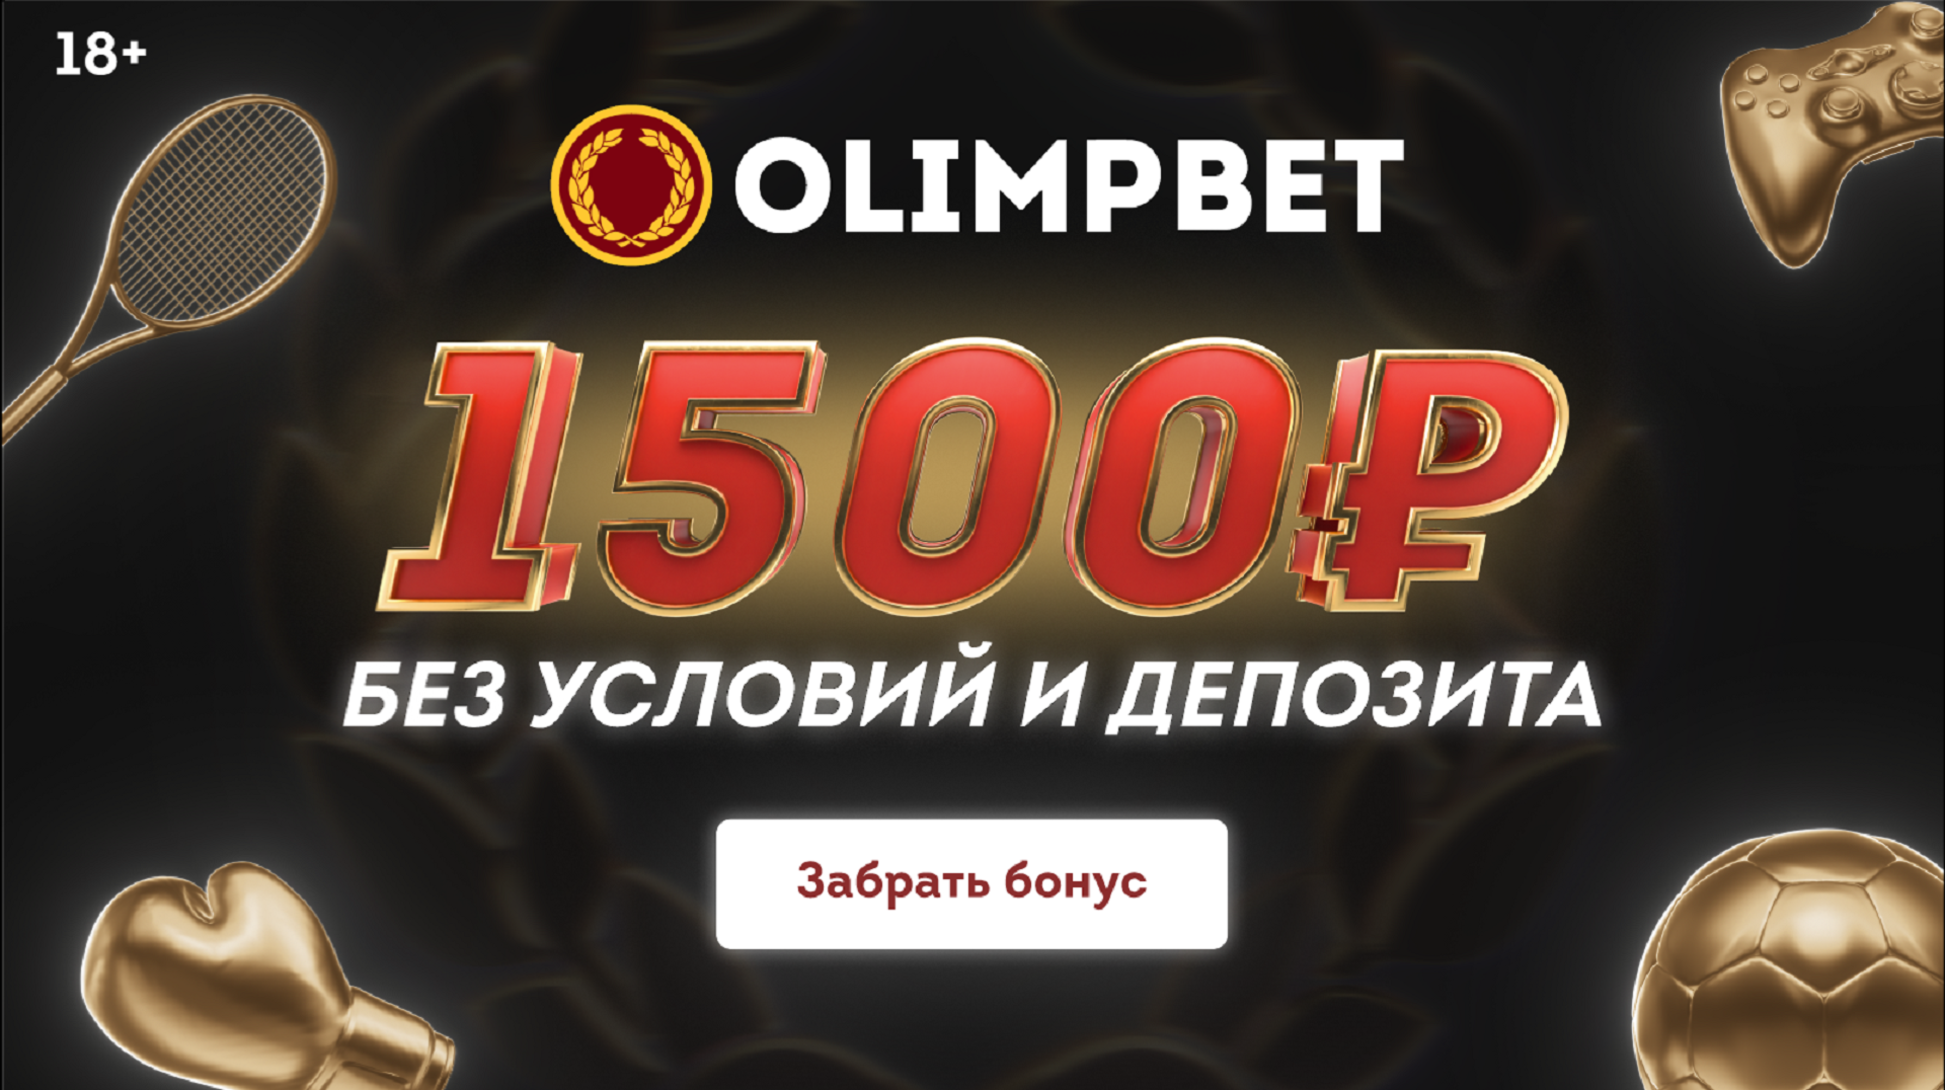 БК Олимпбет дарит 1500 рублей каждому новому игроку